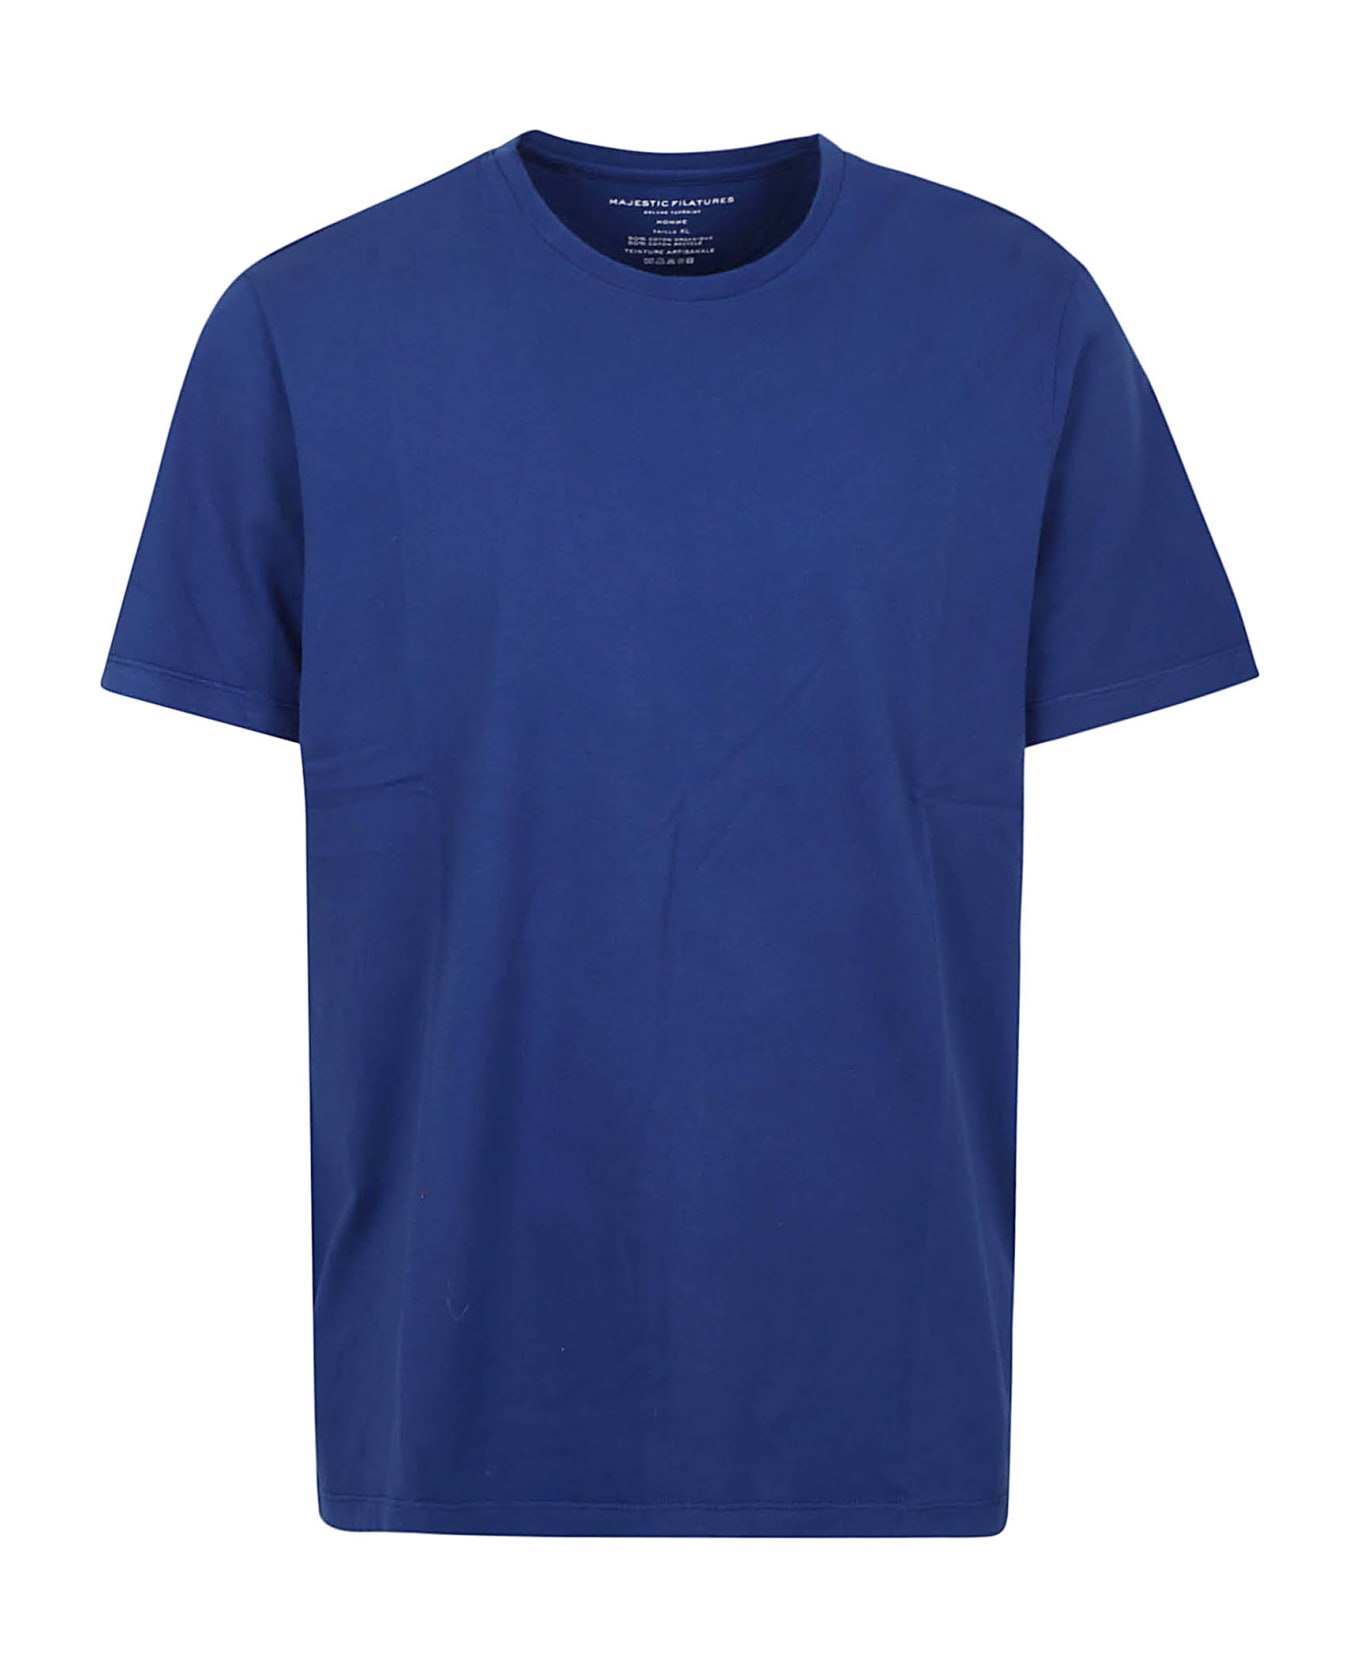 Majestic Filatures T-shirt - Bleu Roi シャツ